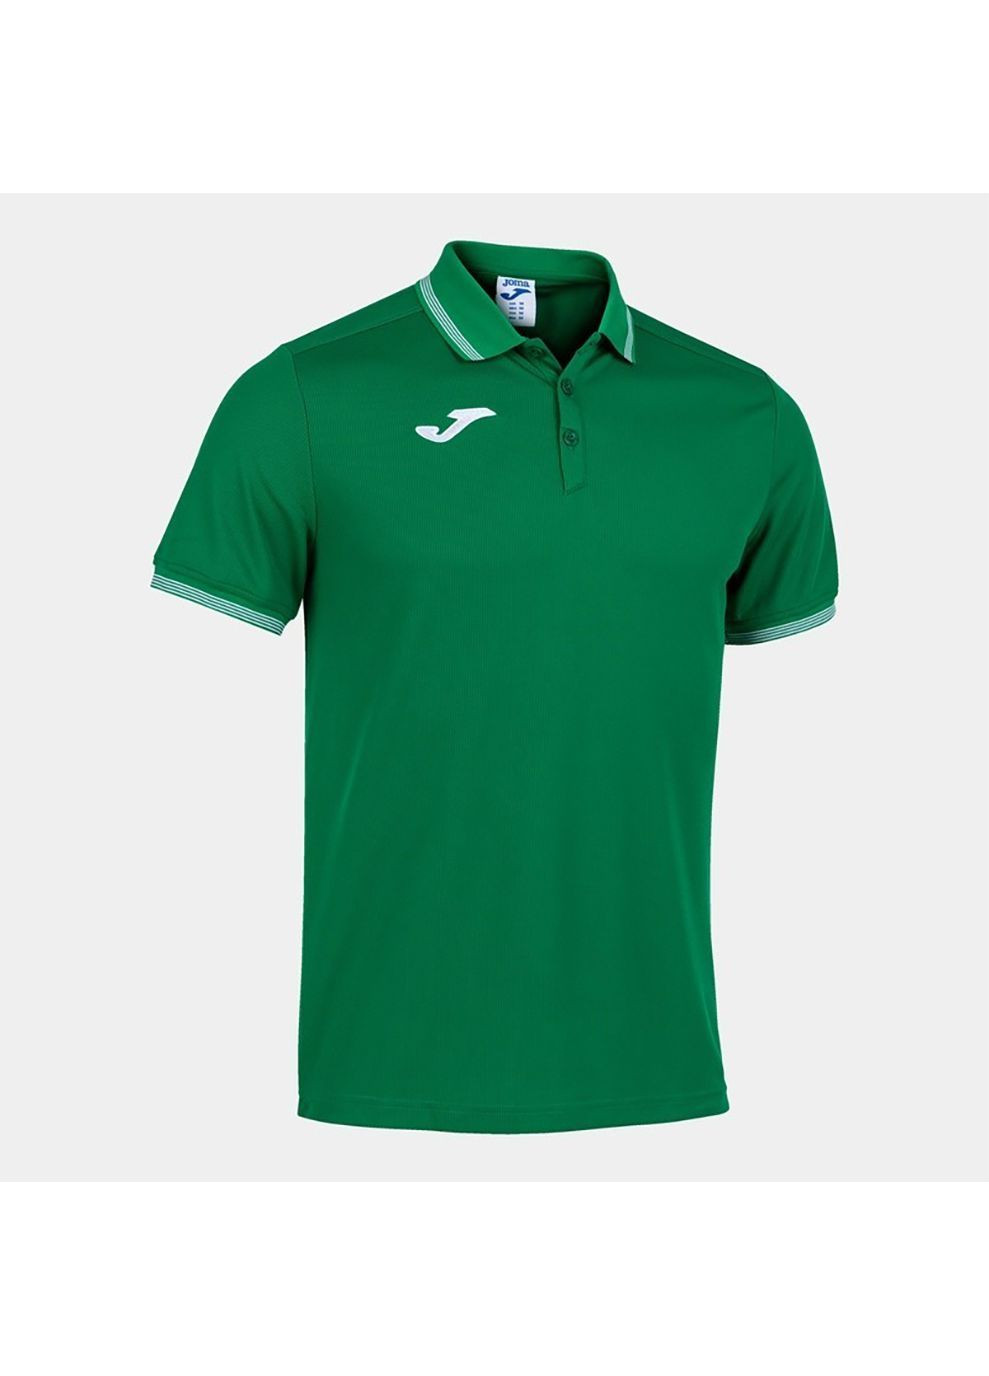 Зеленая футболка-поло campus iii зеленый для мужчин Joma